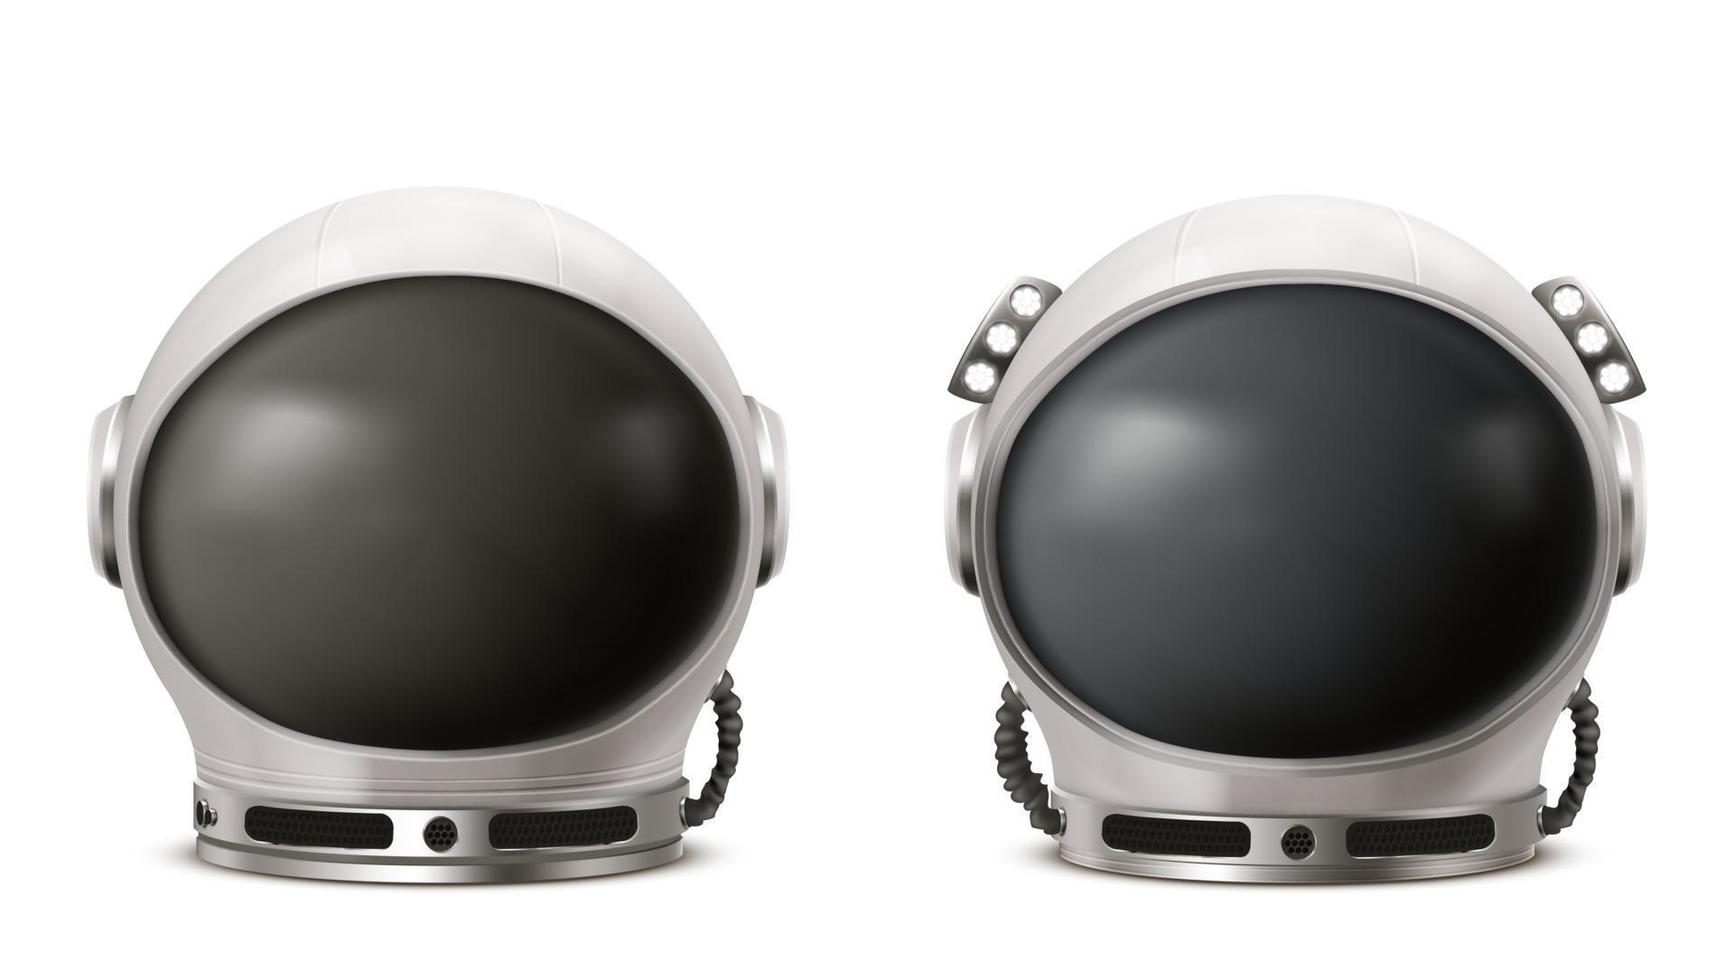 Astronaut helmet, cosmonaut space suit front view vector